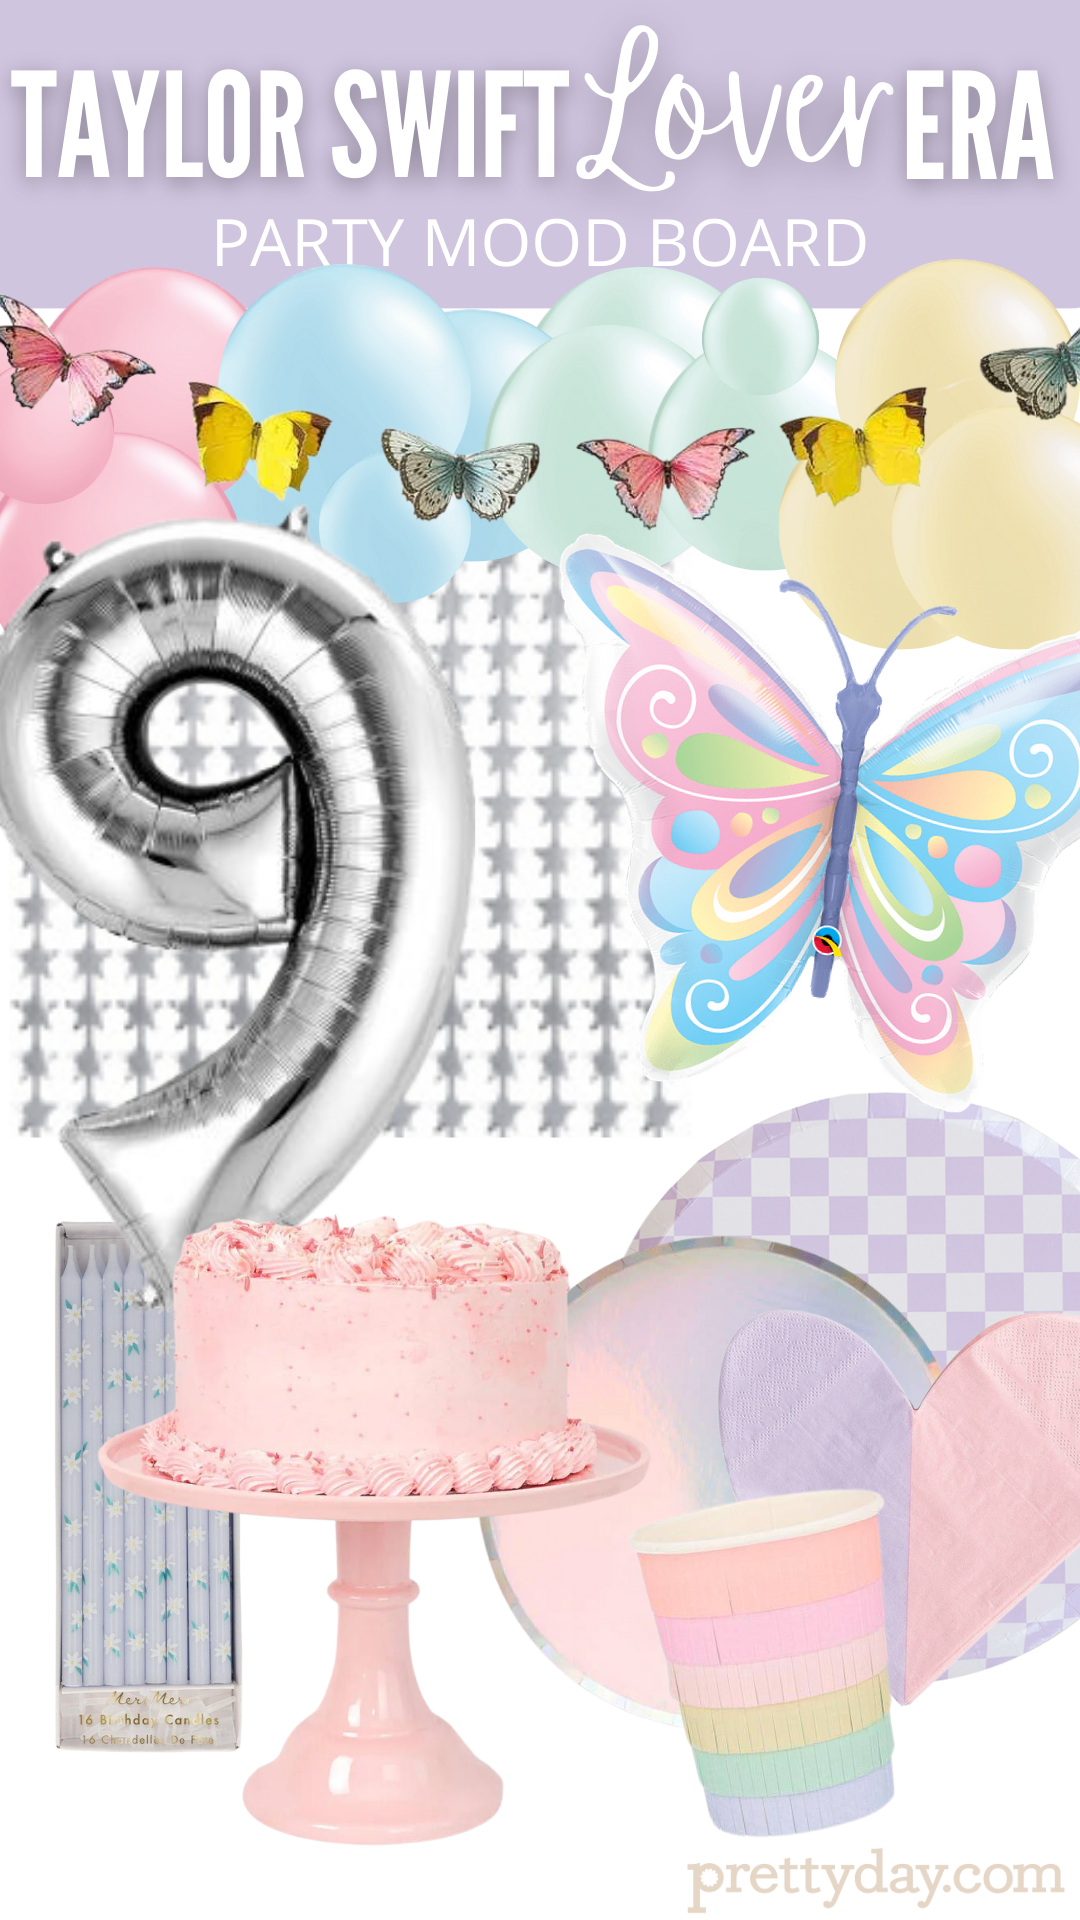 20 Best Pastel Party decorations ideas  pastel party, party decorations, pastel  party decorations